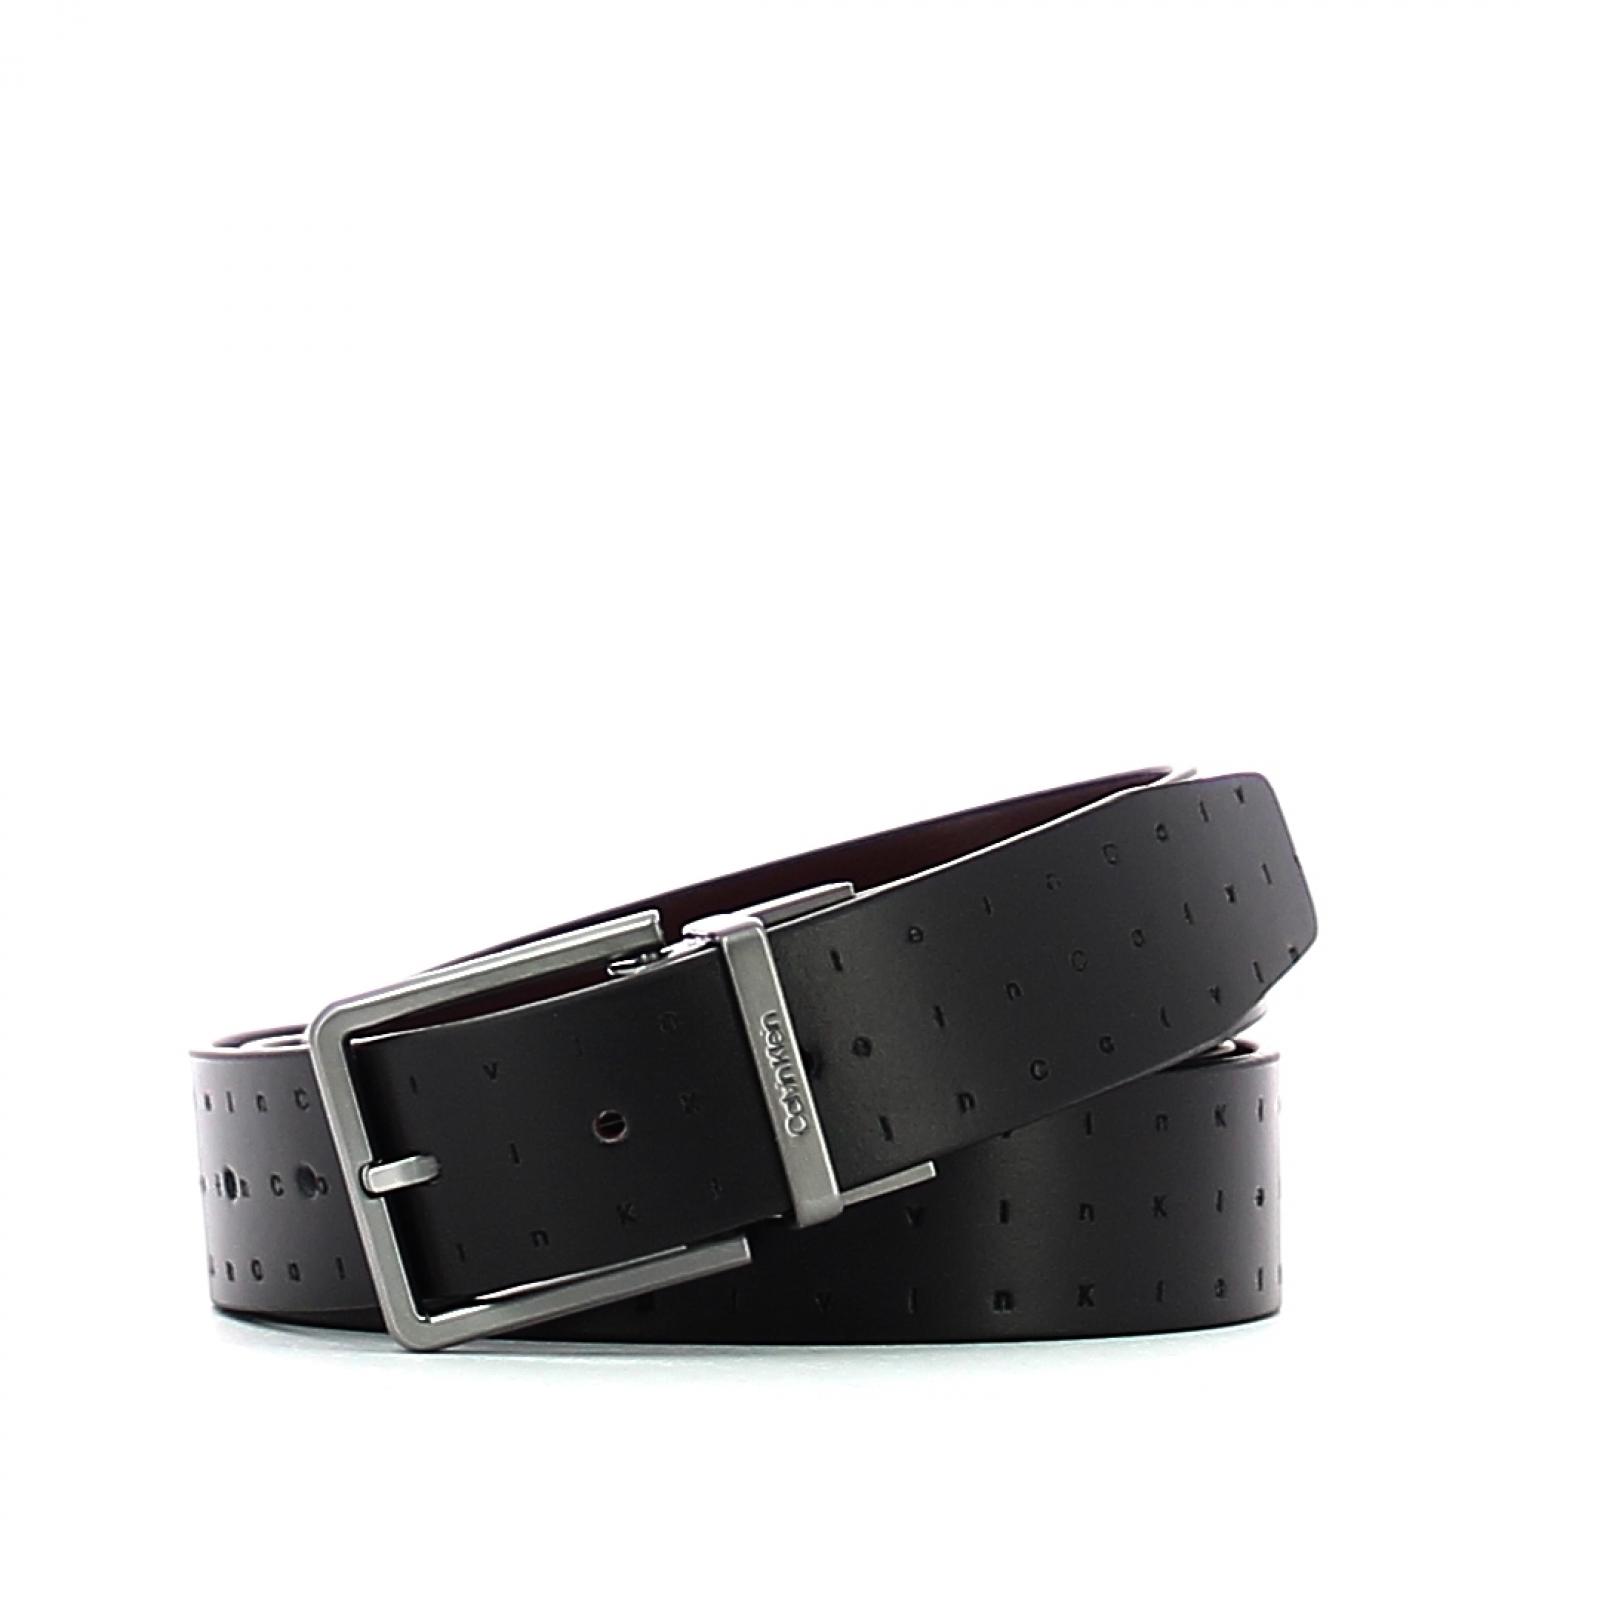 Doubleface leather belt 3.5 cm-BLACK-105